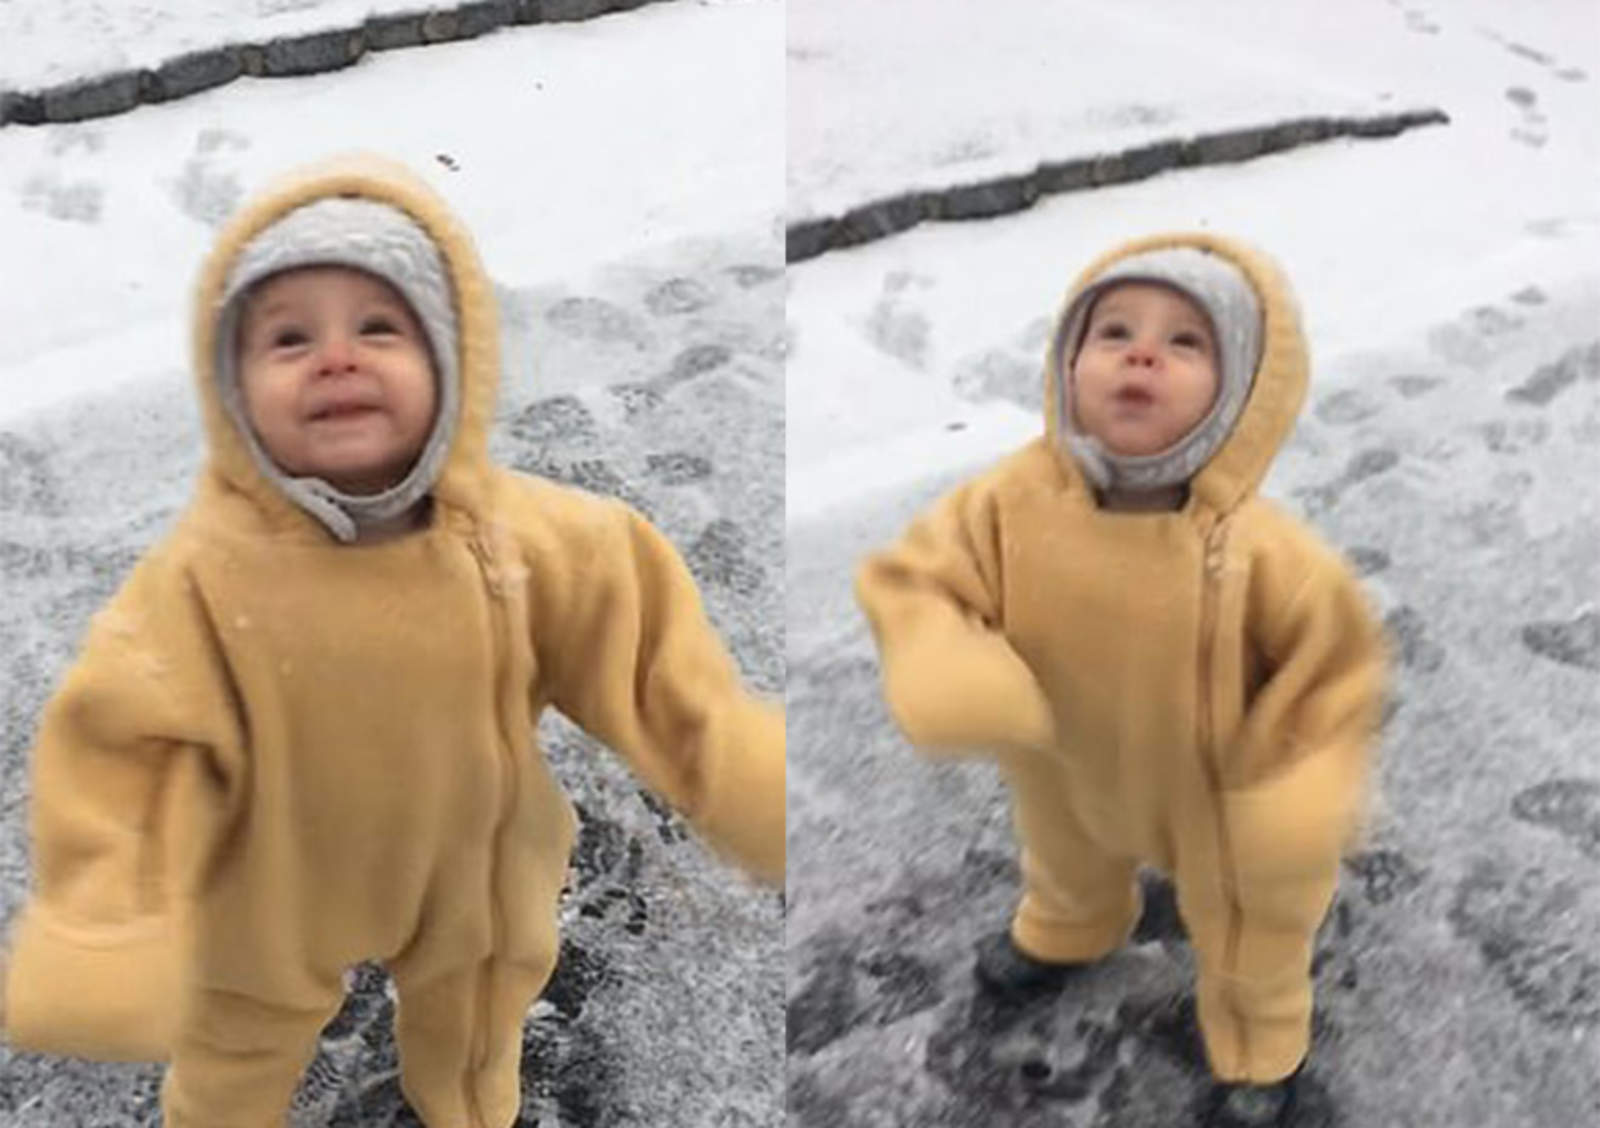 Adorable bebé disfruta la nieve por primera vez